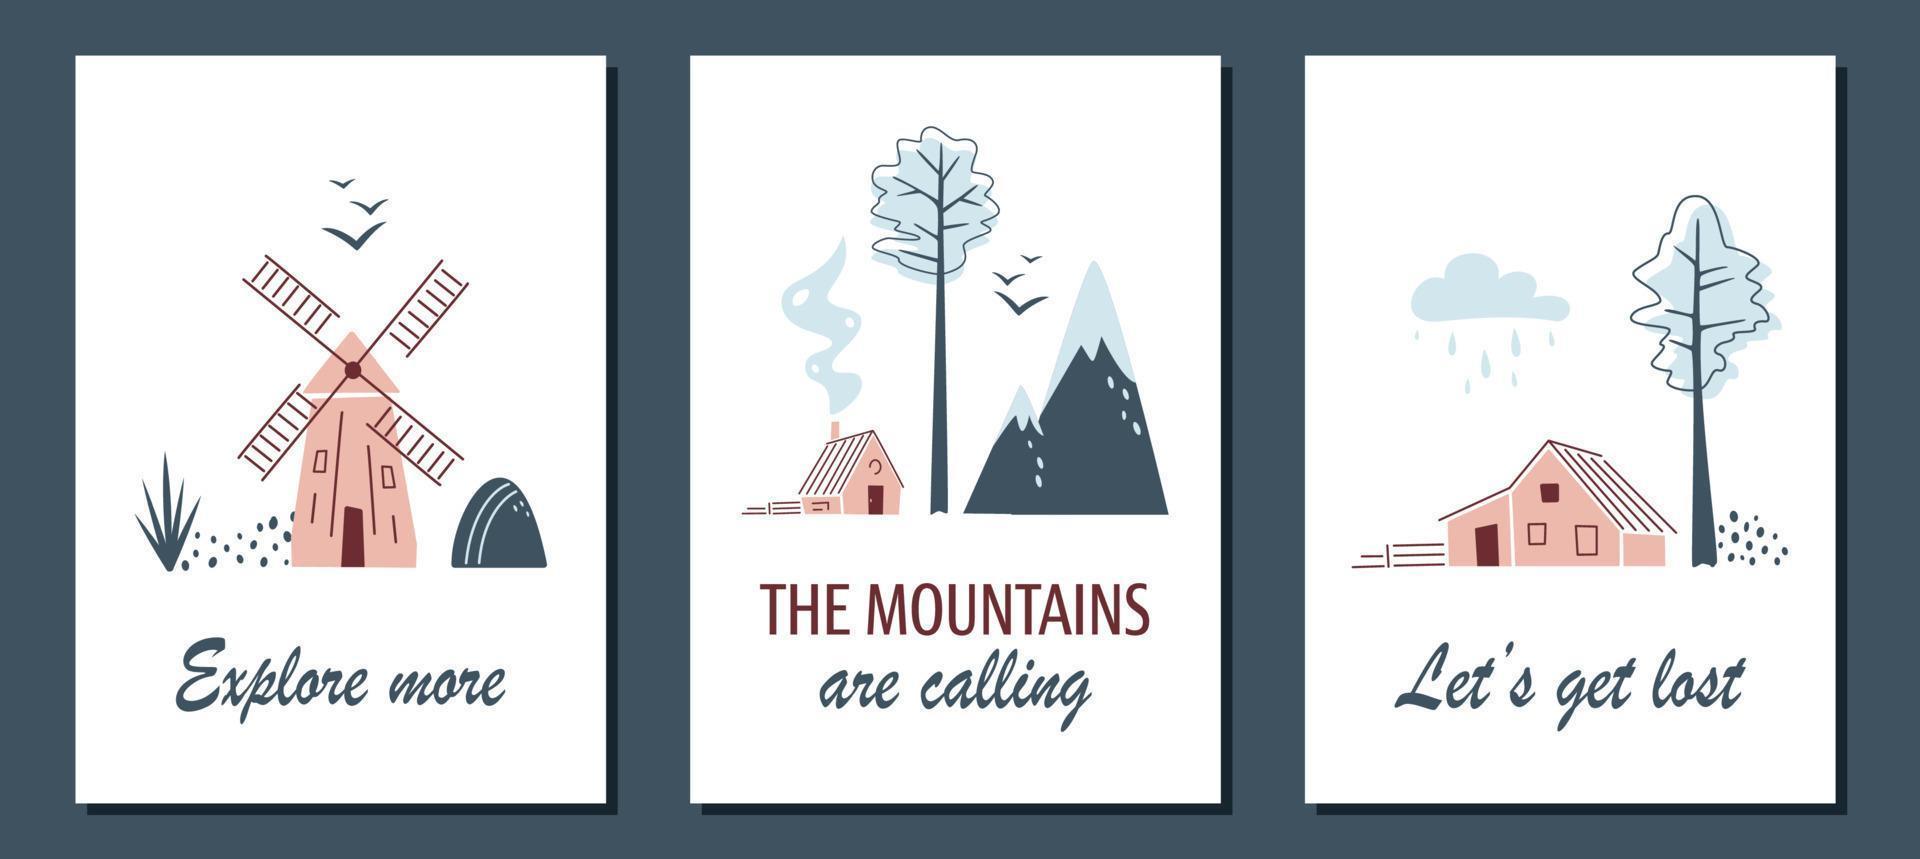 conjunto de cartões minimalistas com paisagens do norte. moinho de vento, pássaros, casas e abetos vermelhos em fundo branco. paisagens nórdicas em cores limitadas. conceito de viagem, acampamento ou natureza. vetor